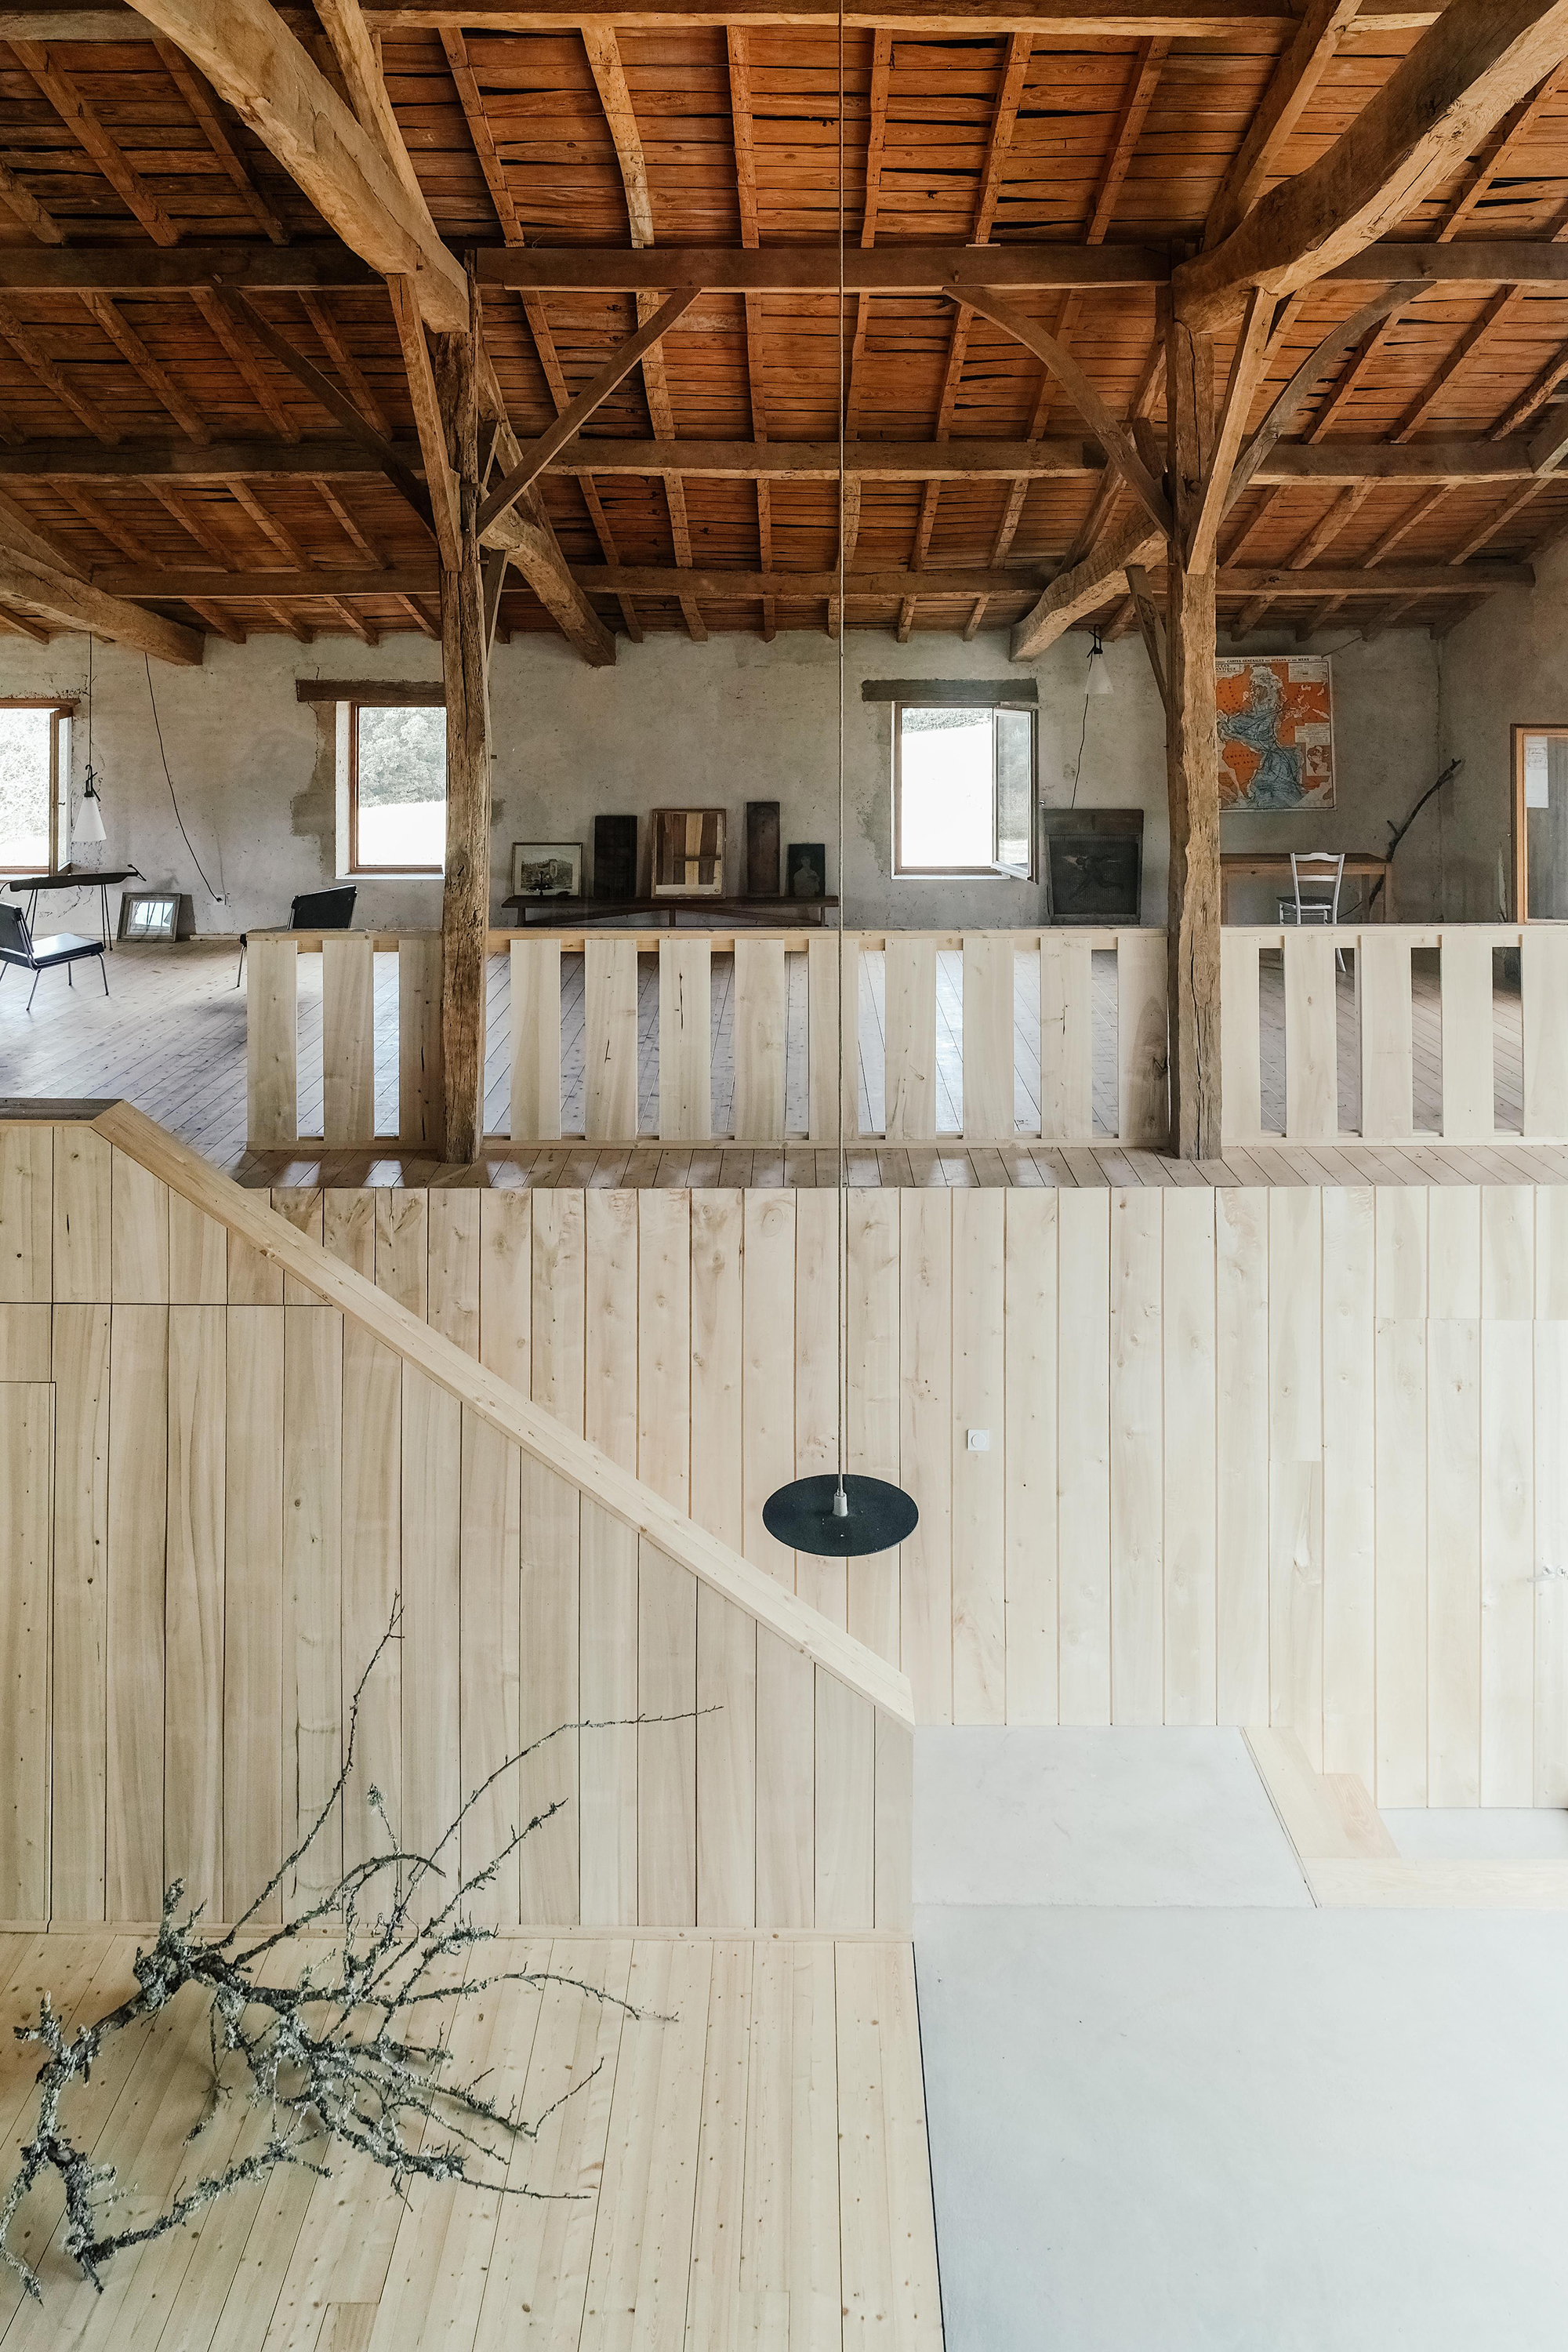 Garrelis Farm by Atelier Boteko, interior detail, staircase